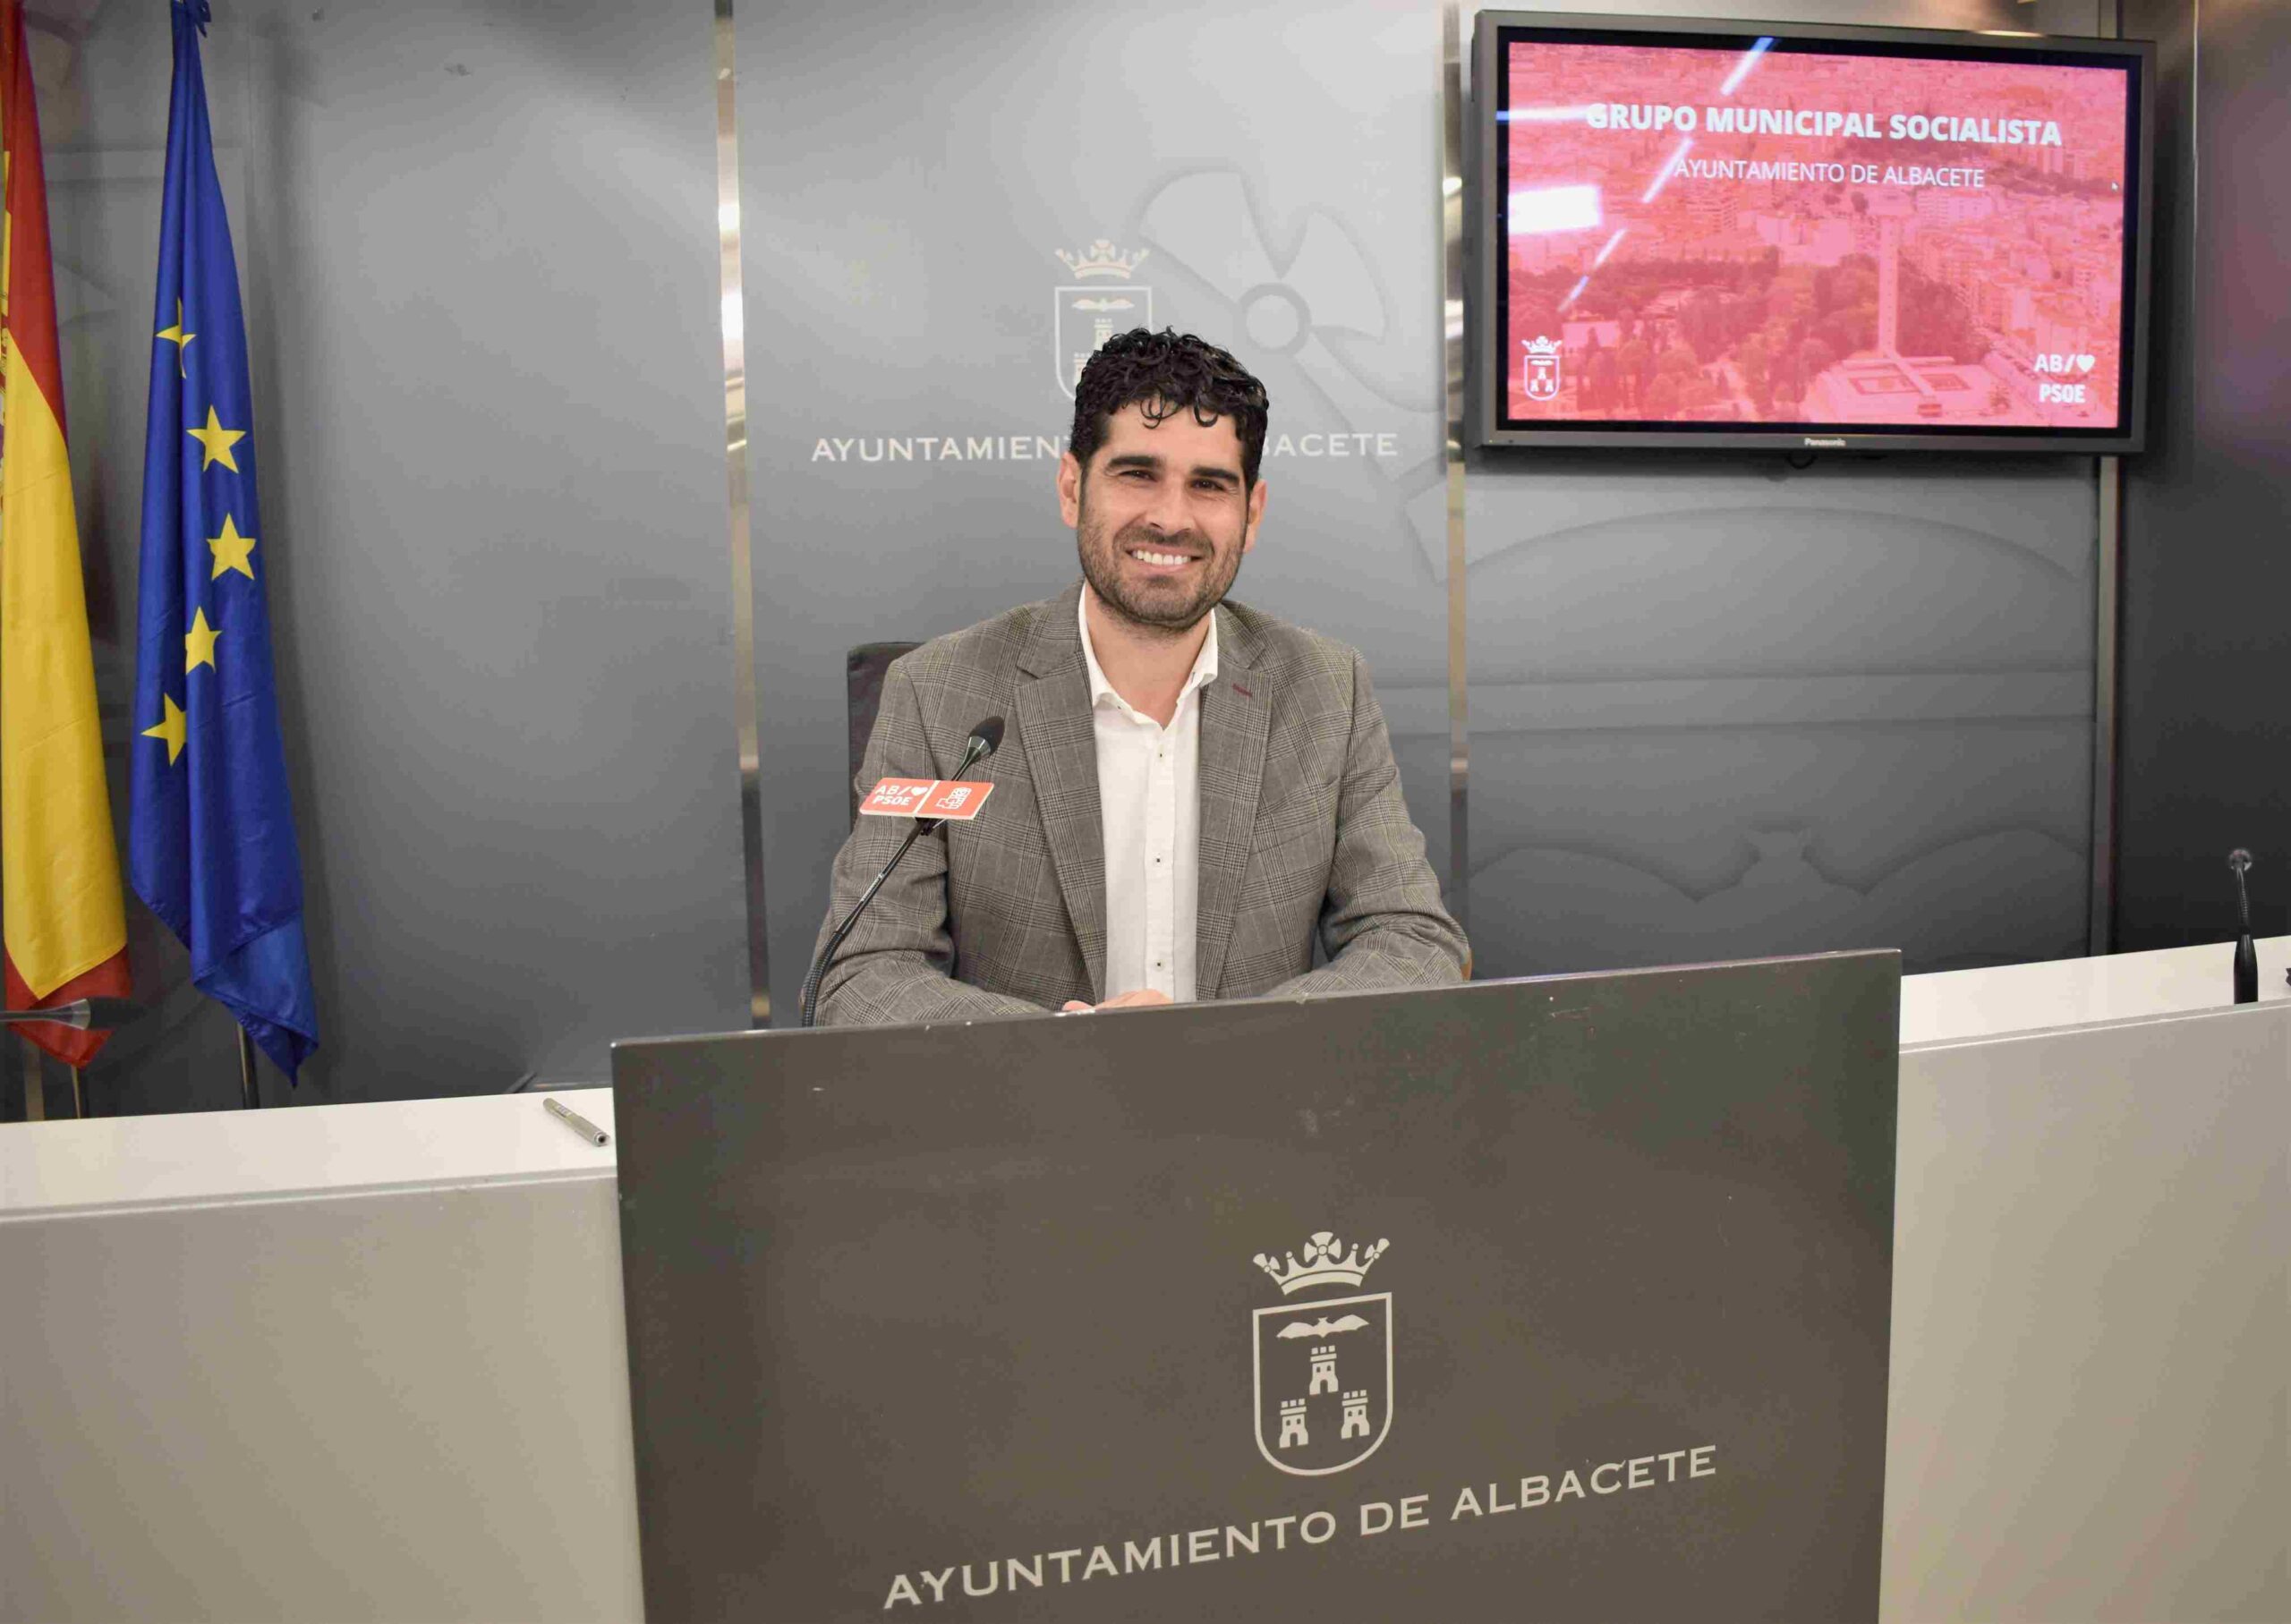 Concejal socialista del Ayuntamiento de Albacete, José González